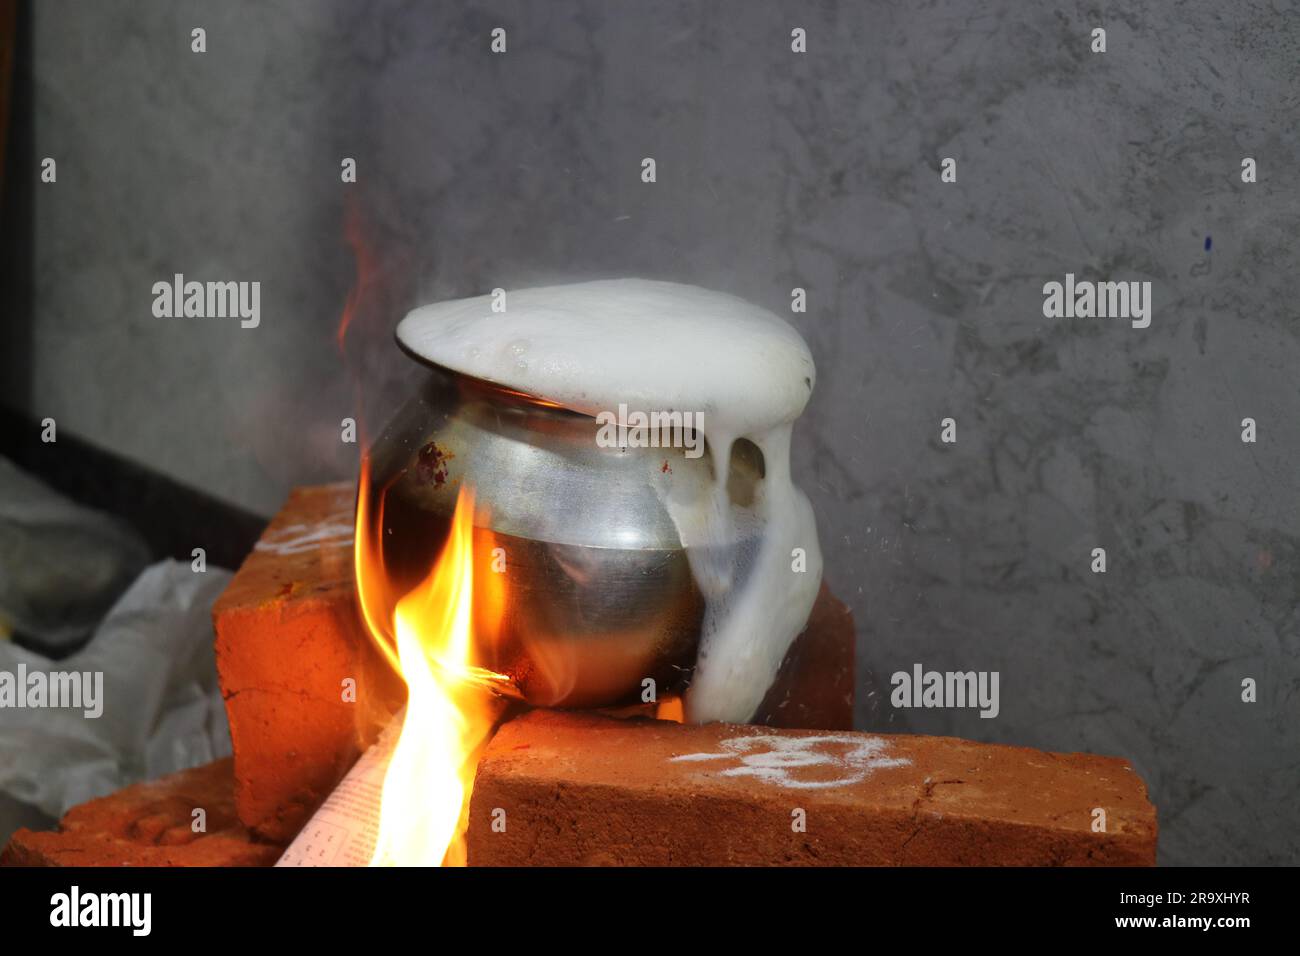 Il latte è traboccante su una stufa a mattoni a causa dell'eccessiva bollitura come tradizione in India per la cerimonia di riscaldamento della casa Foto Stock